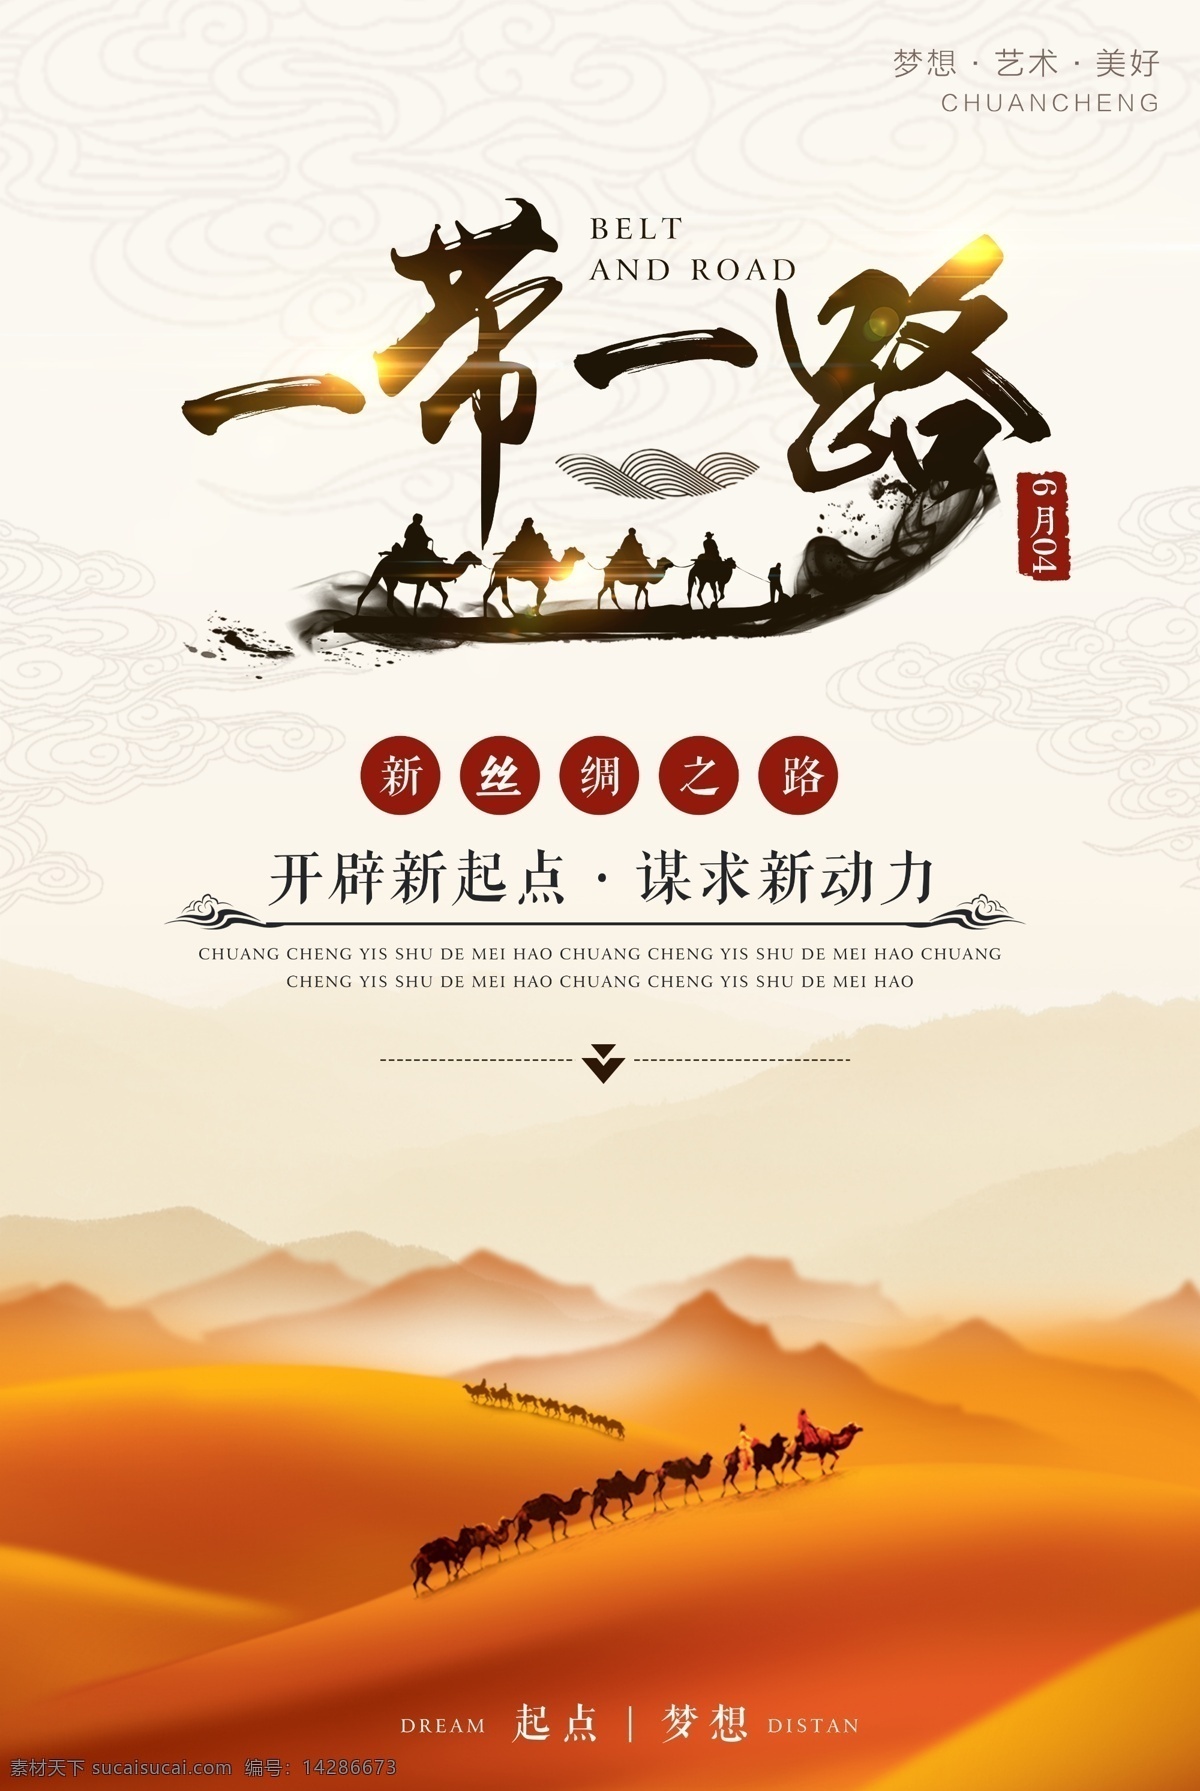 中国 风 一带 一路 宣传海报 背景 党建 党建海报 海报 经济 经济带 旅游 骆驼 沙漠 丝绸之路 自然景观 自然风光